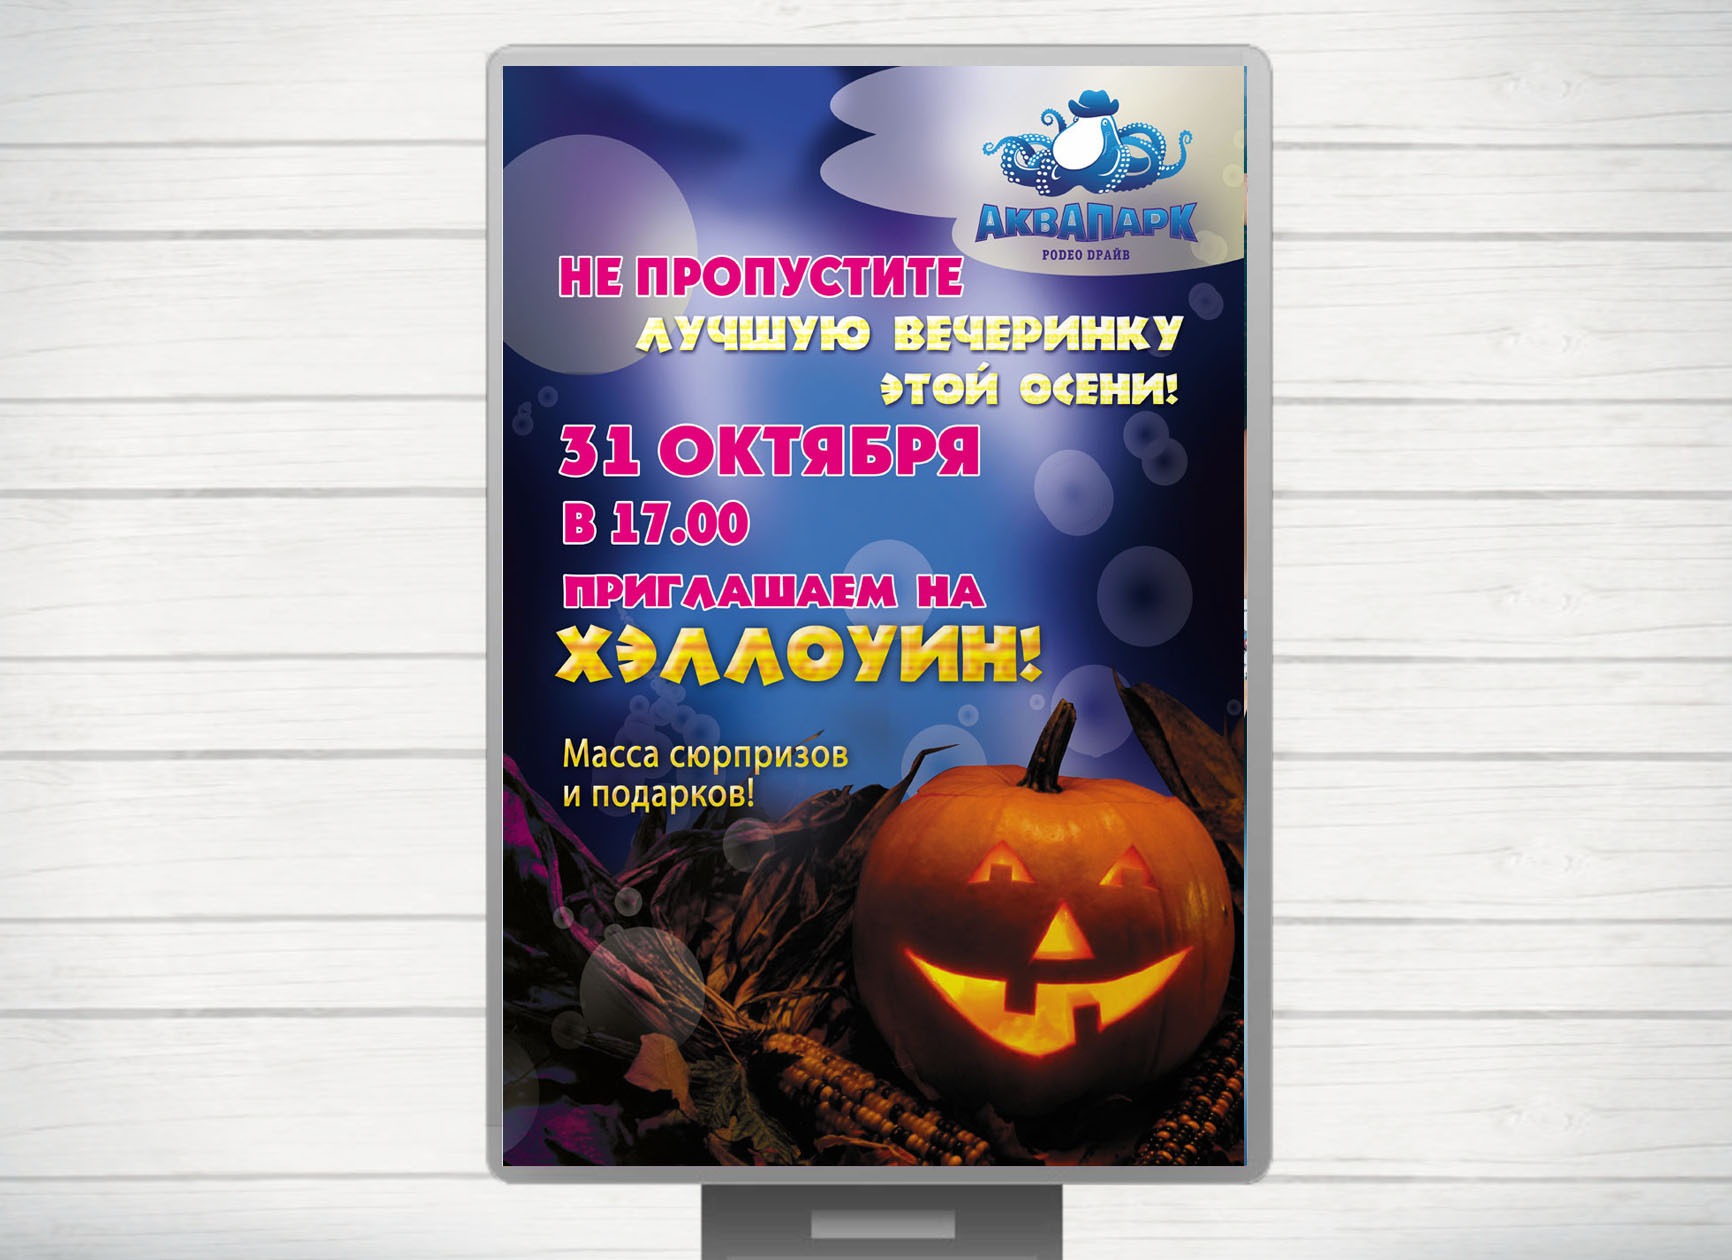 Аквапарк Родео Драйв, информационные плакаты